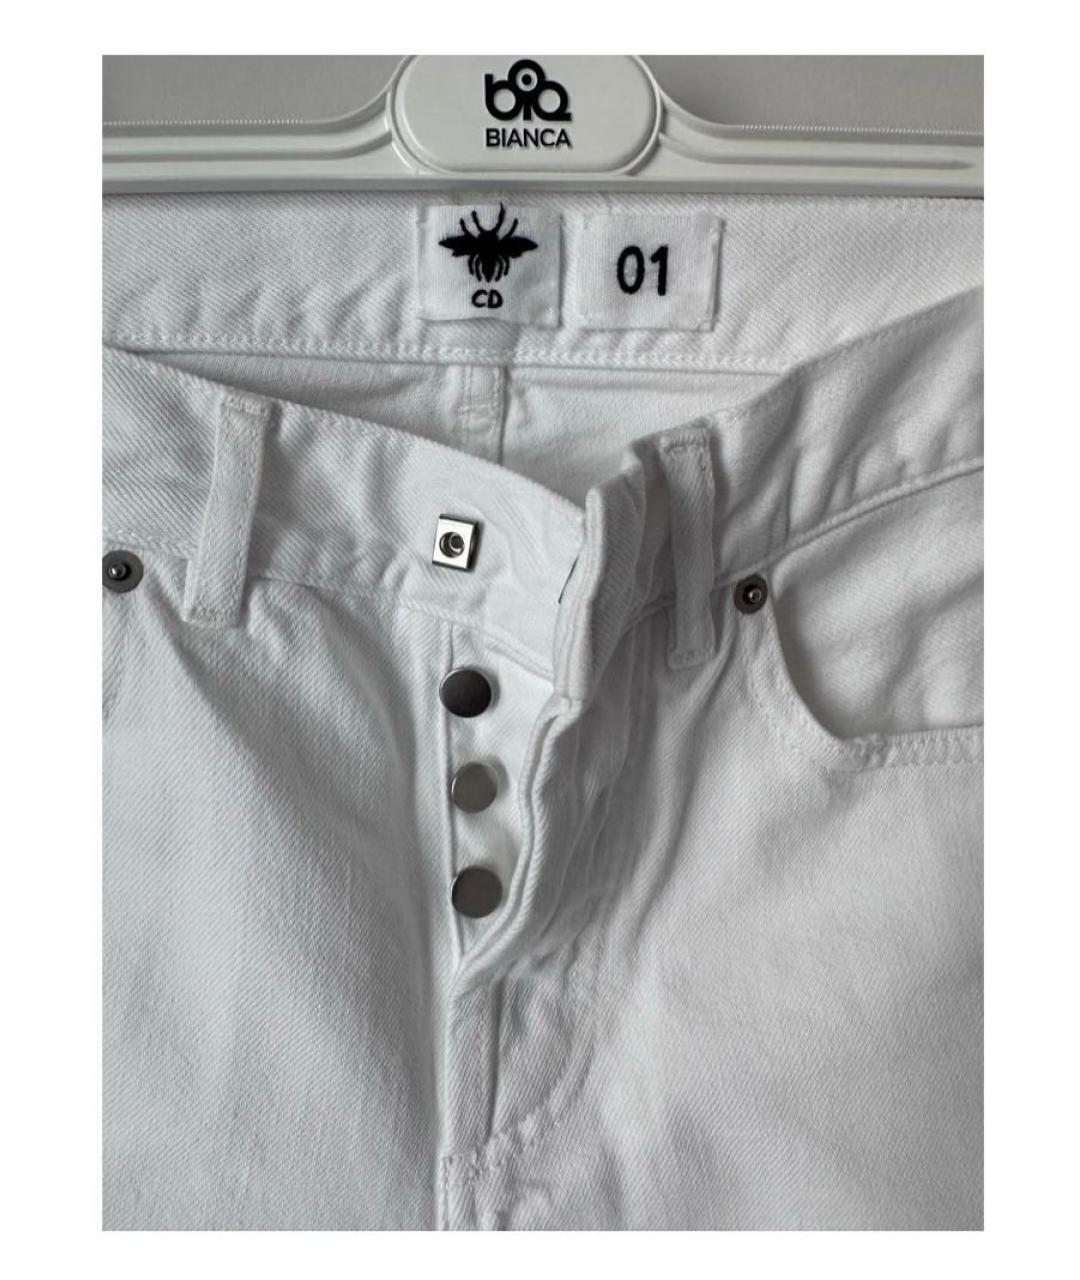 CHRISTIAN DIOR PRE-OWNED Белые хлопковые прямые джинсы, фото 2